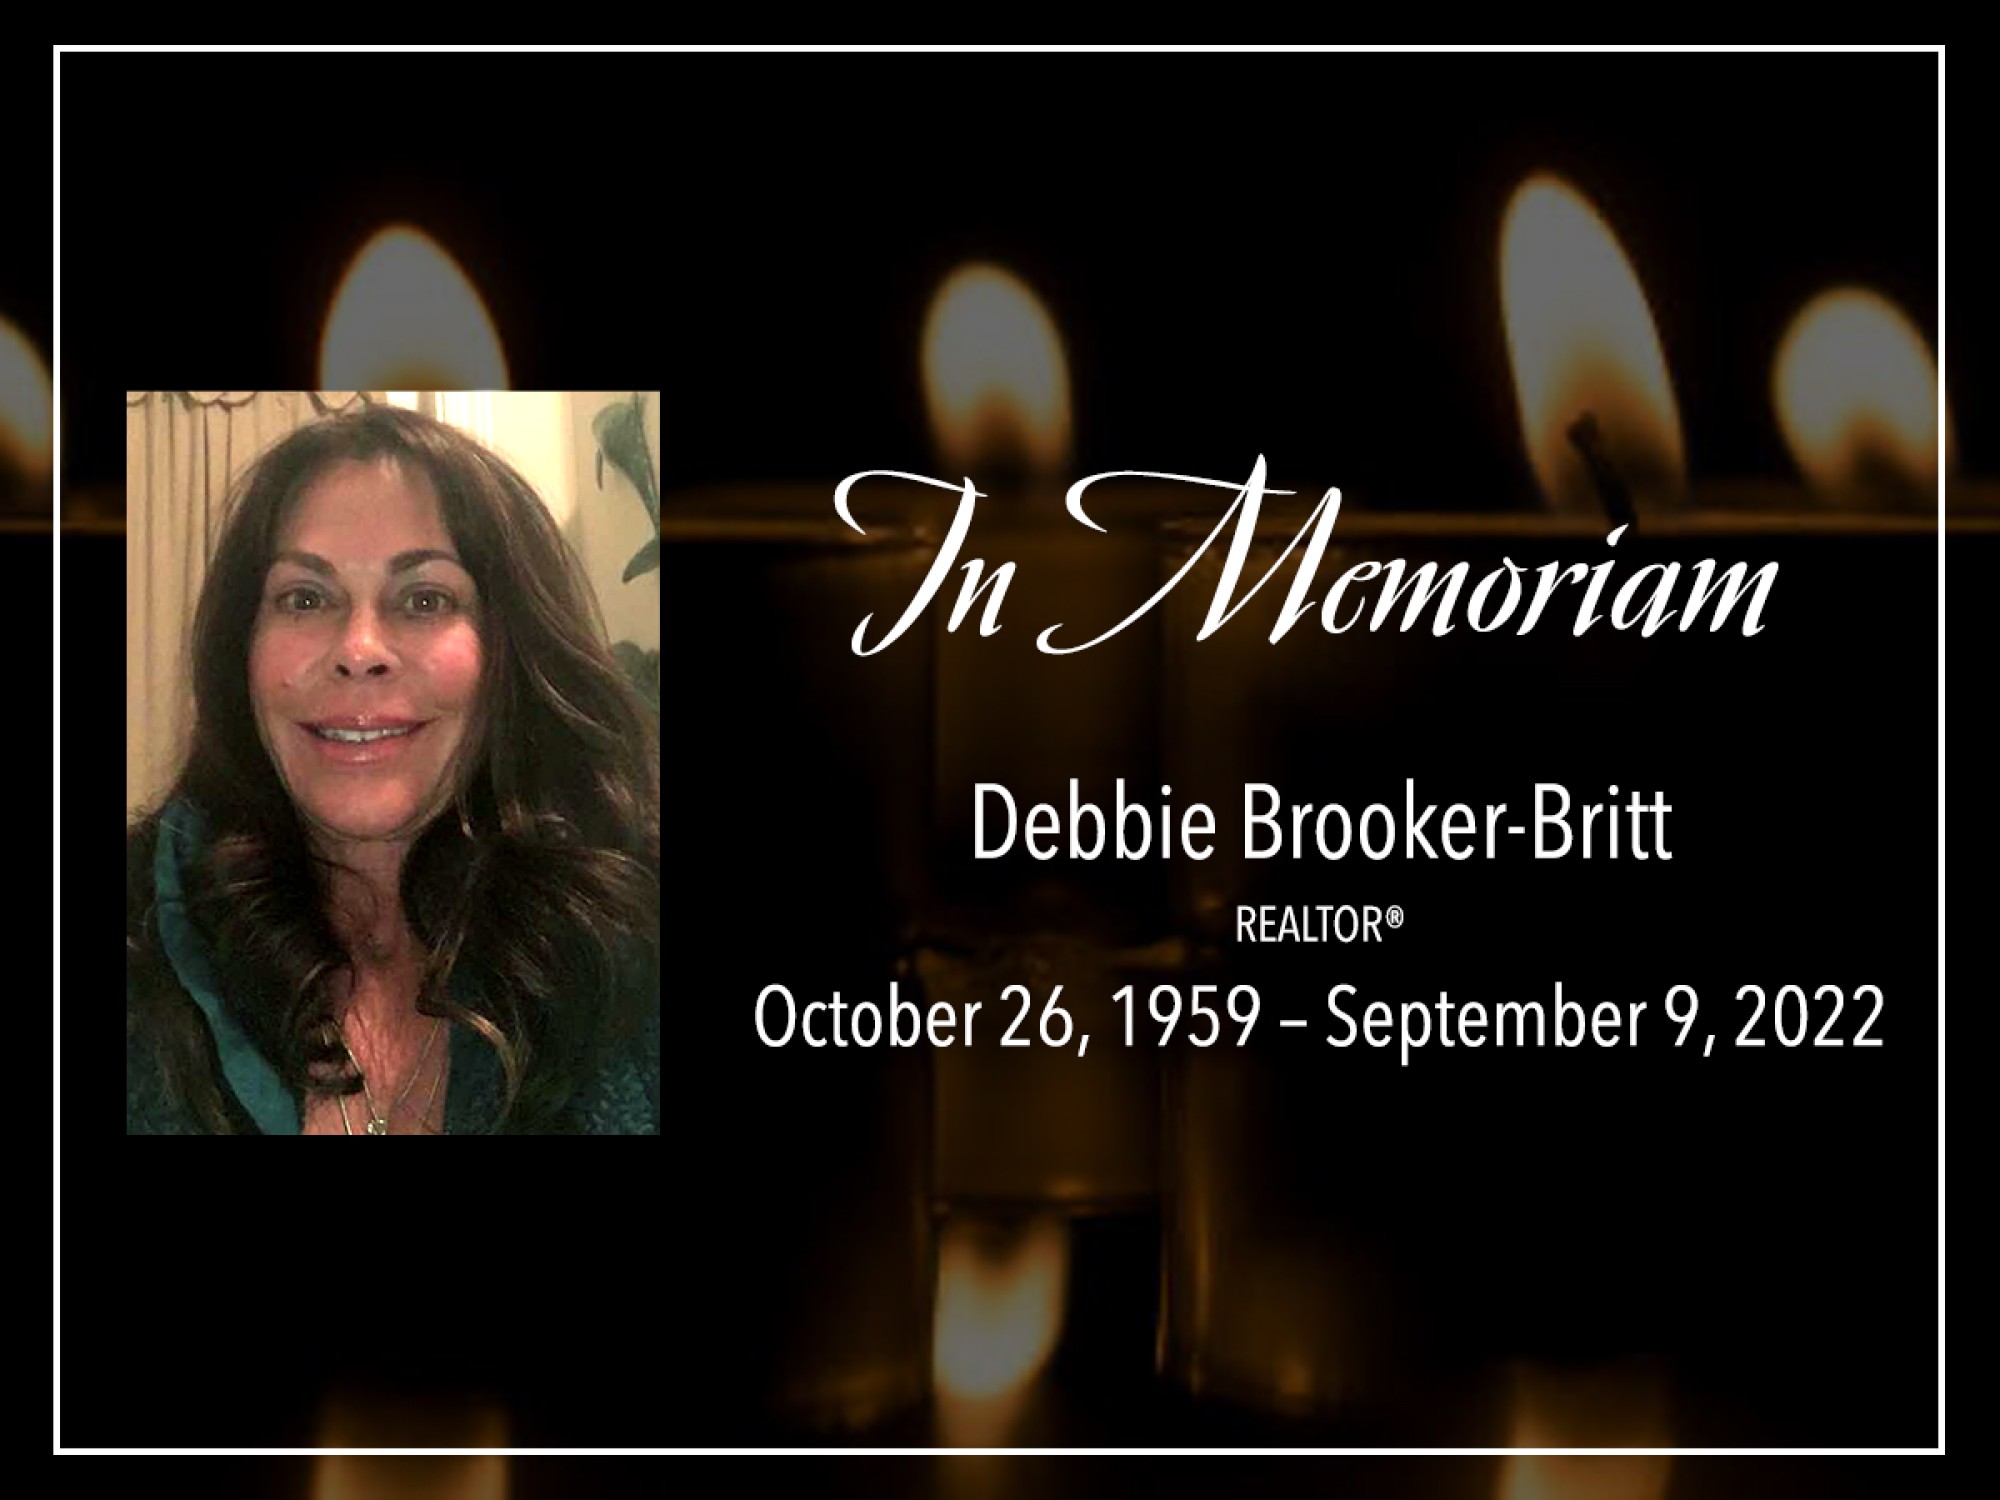 In Memoriam - Debbie Brooker-Britt